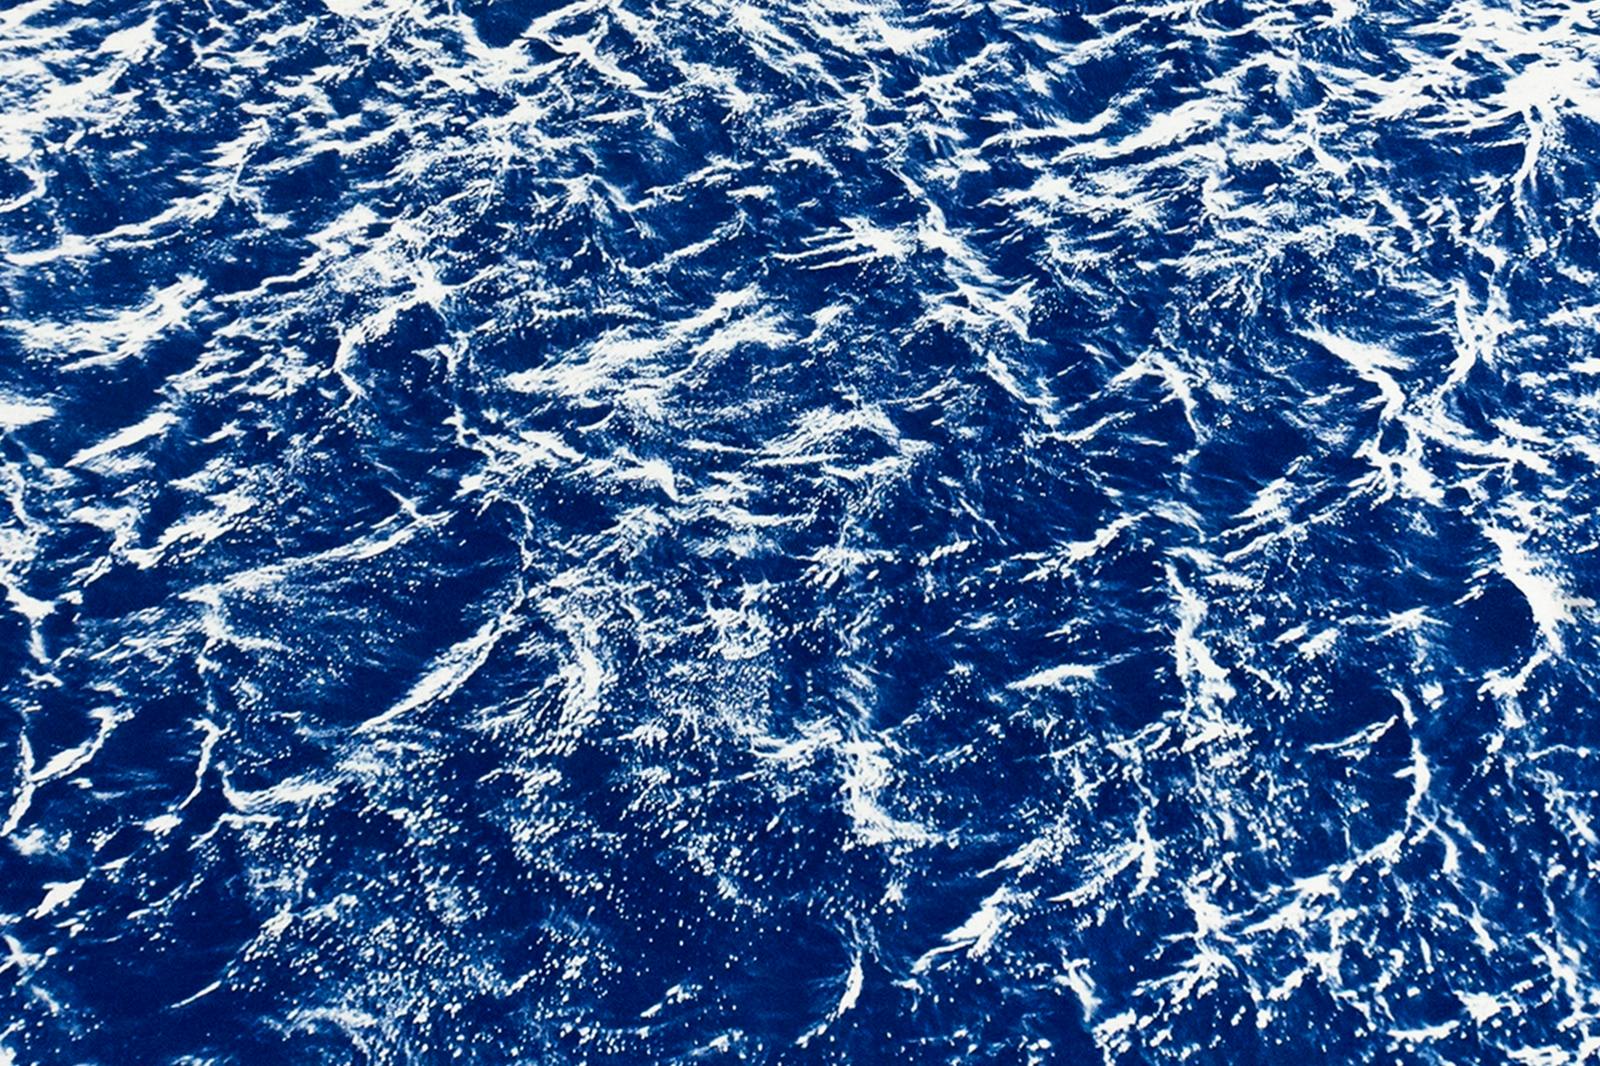 Pacific Ocean Currents, Handmade Cyanotype Seascape in Blue, Waves Landscape  - Realist Art by Kind of Cyan